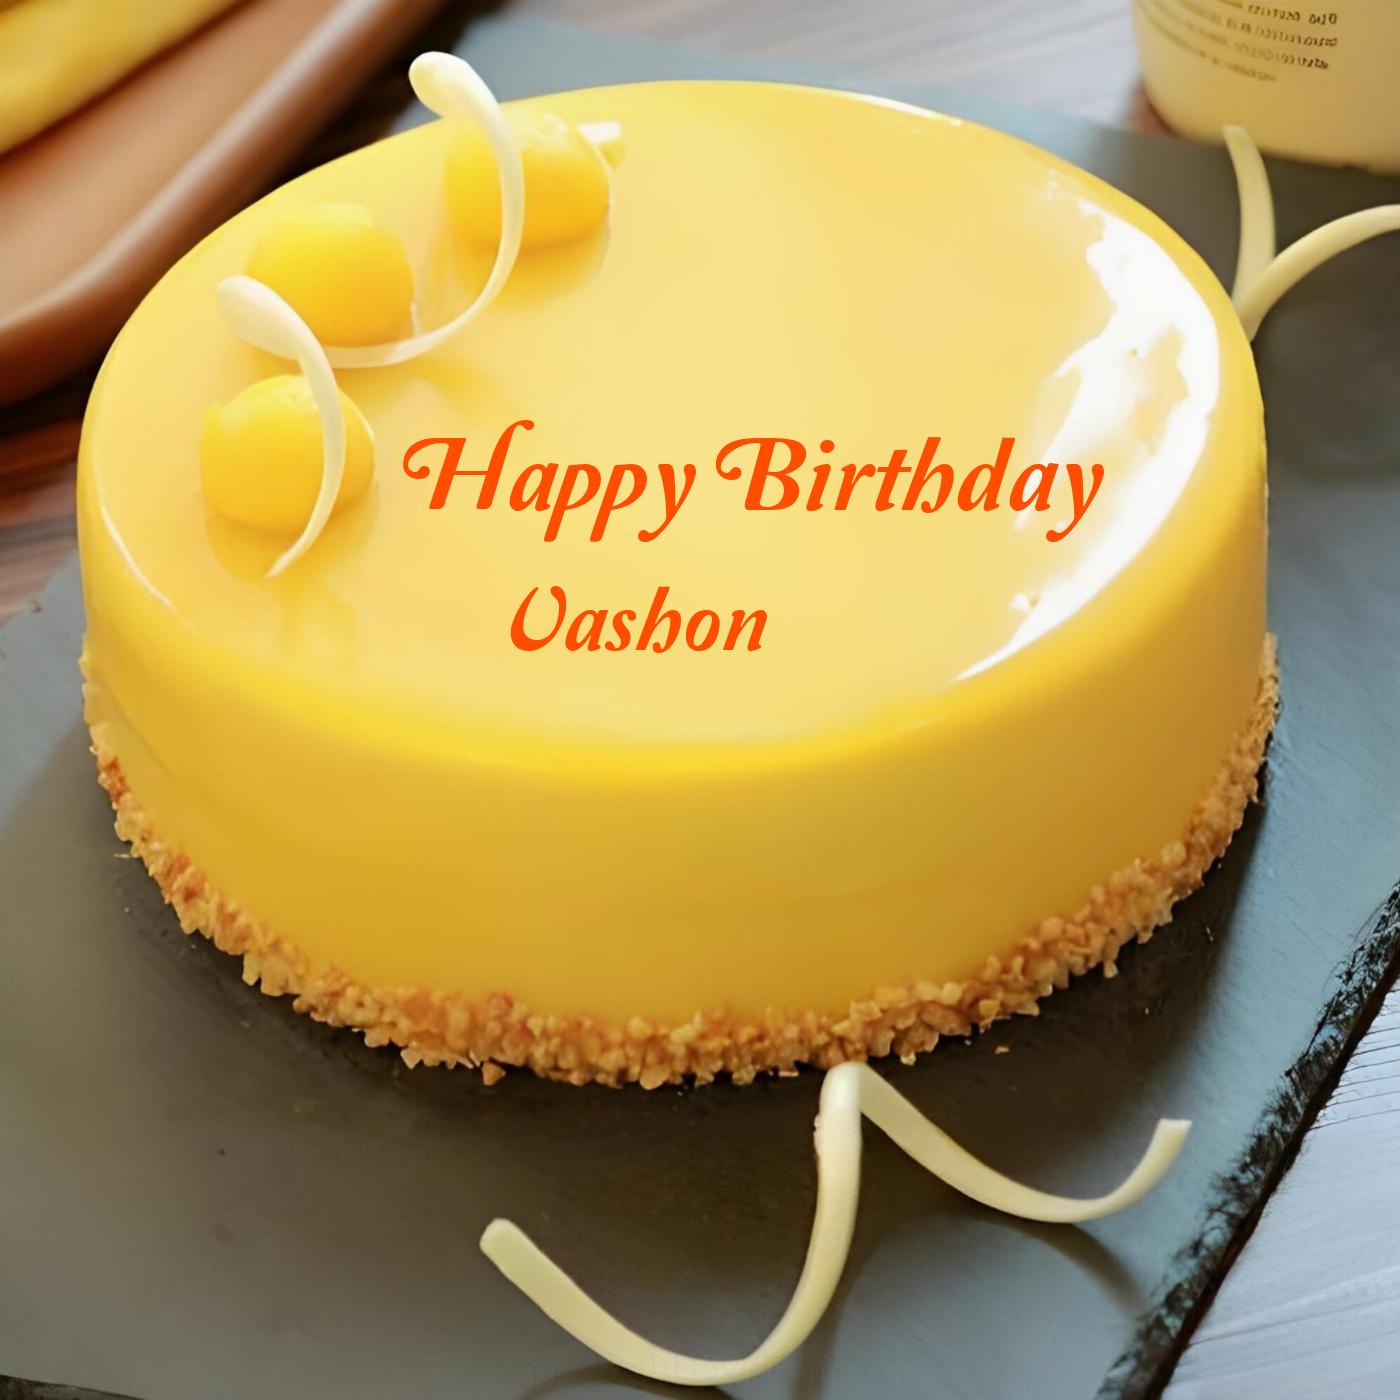 Happy Birthday Vashon Beautiful Yellow Cake